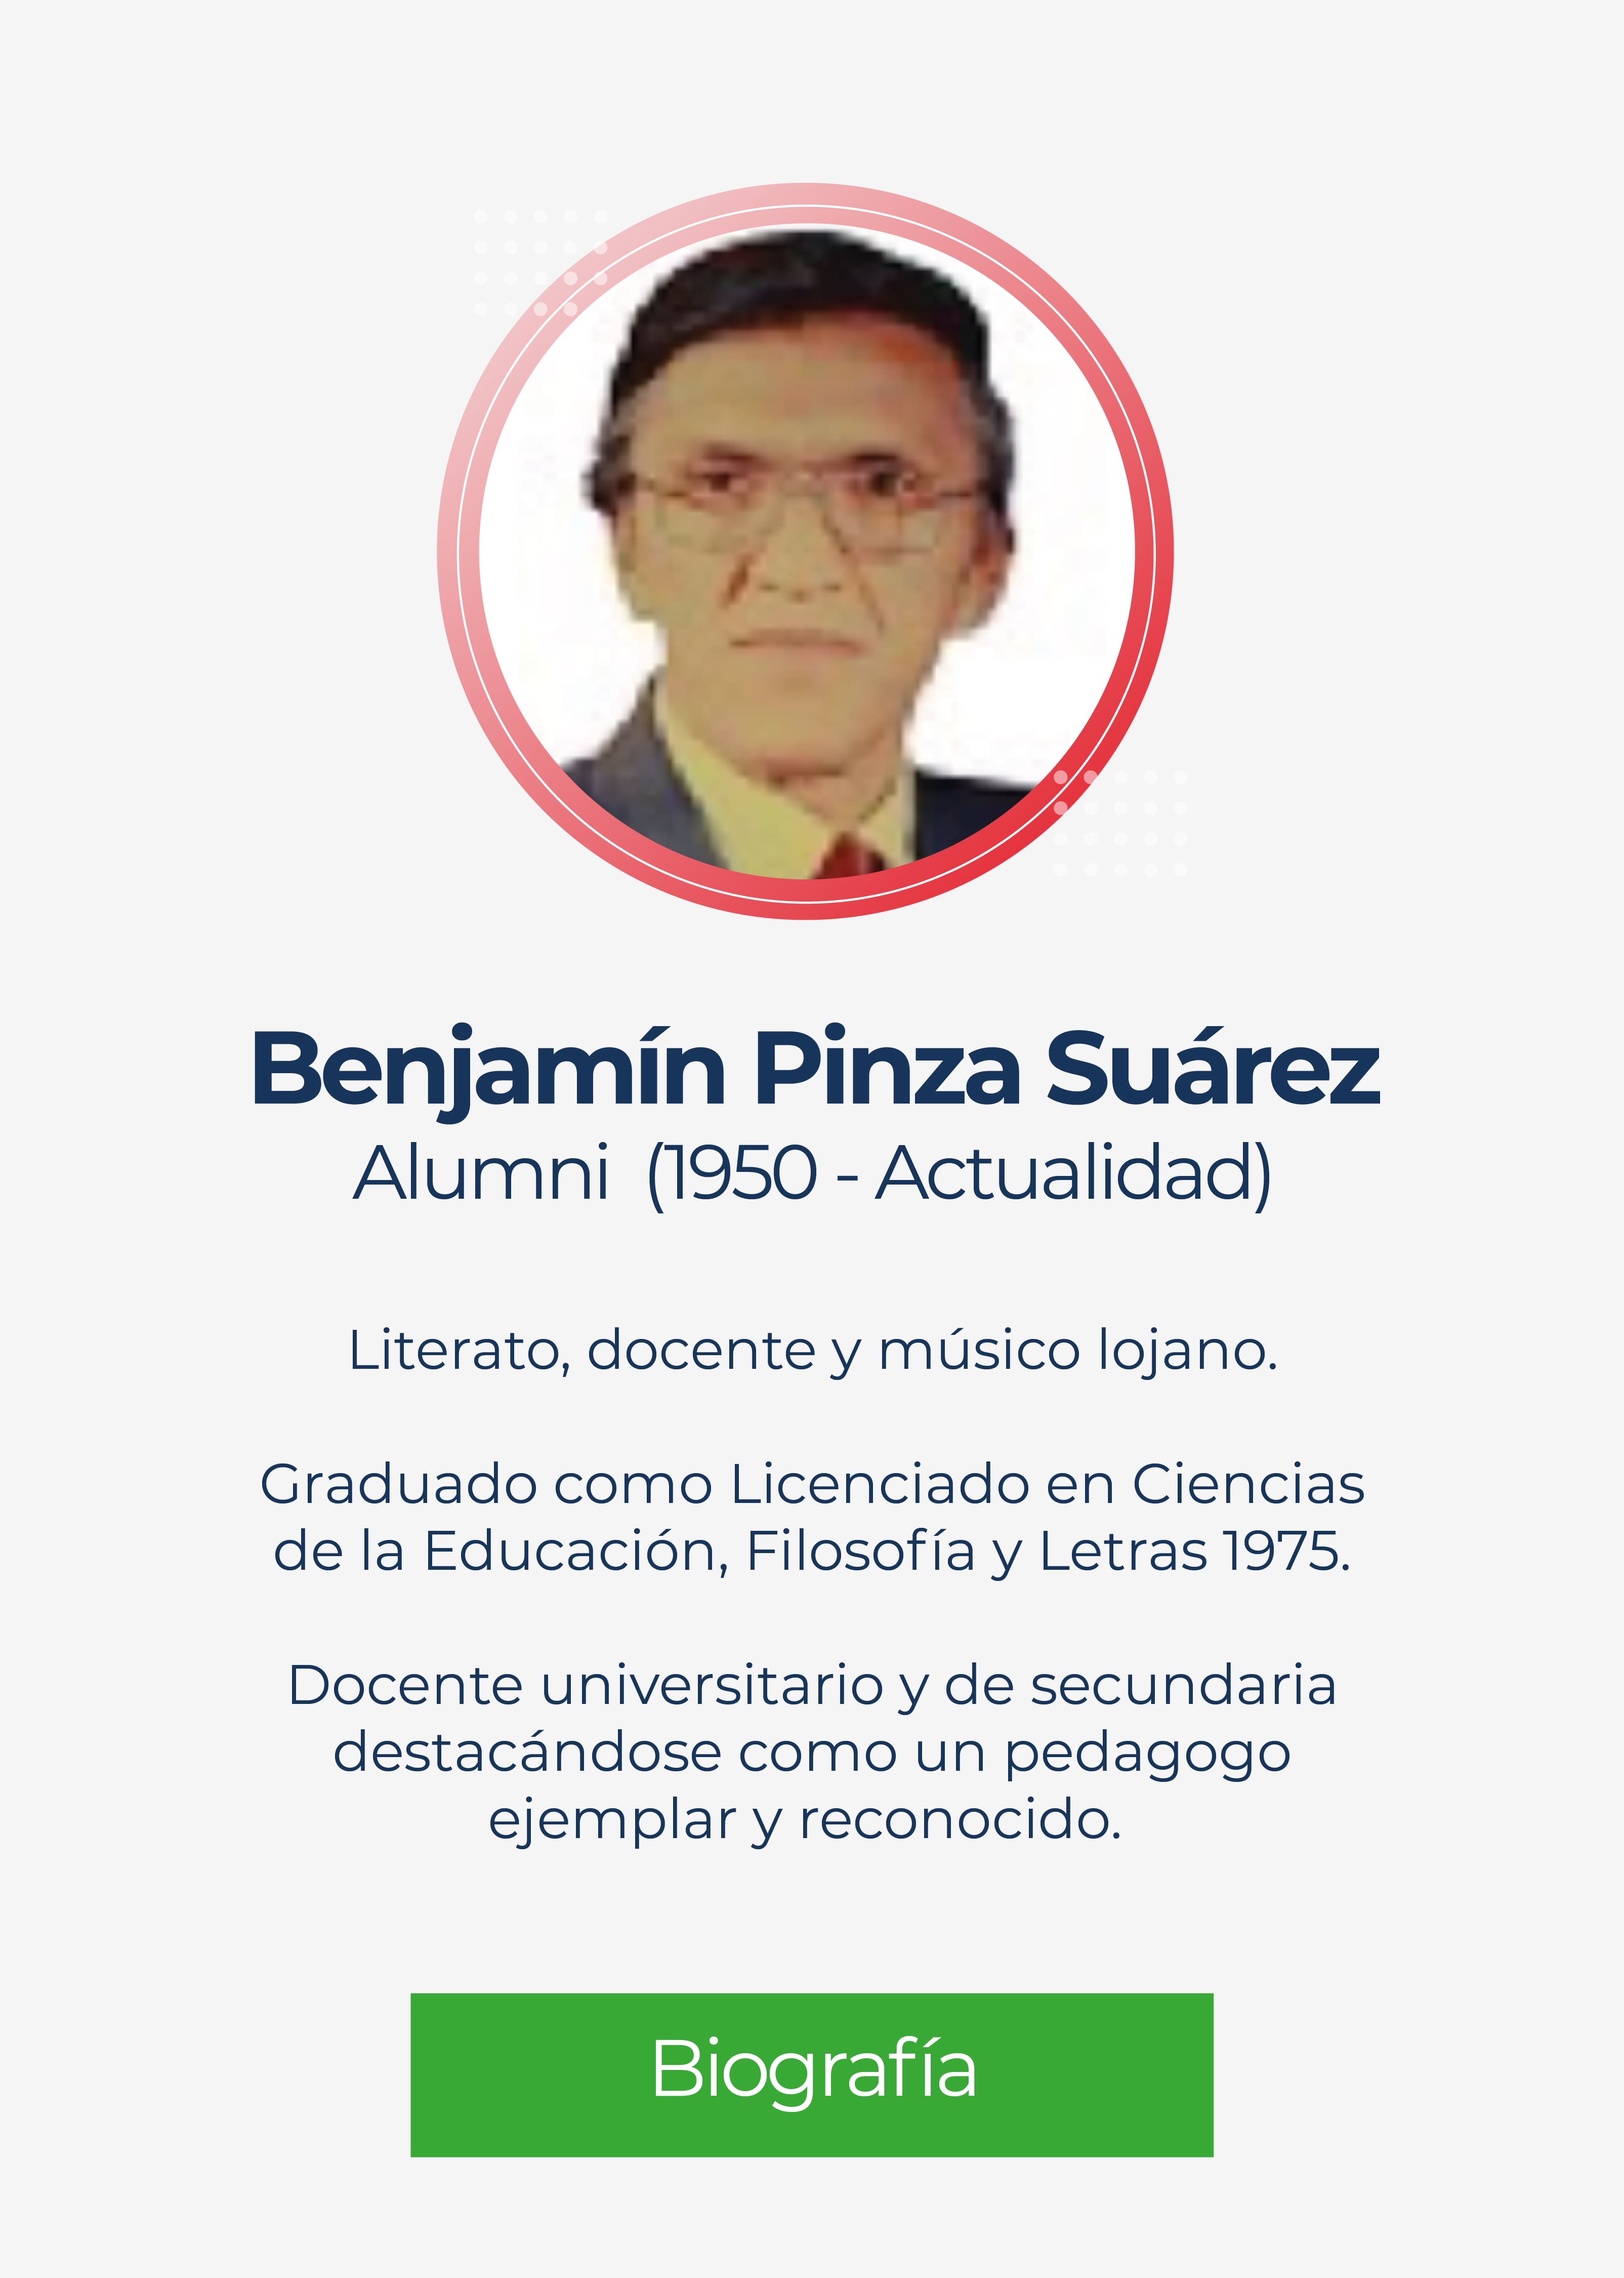 Benjamín Pinza Suárez